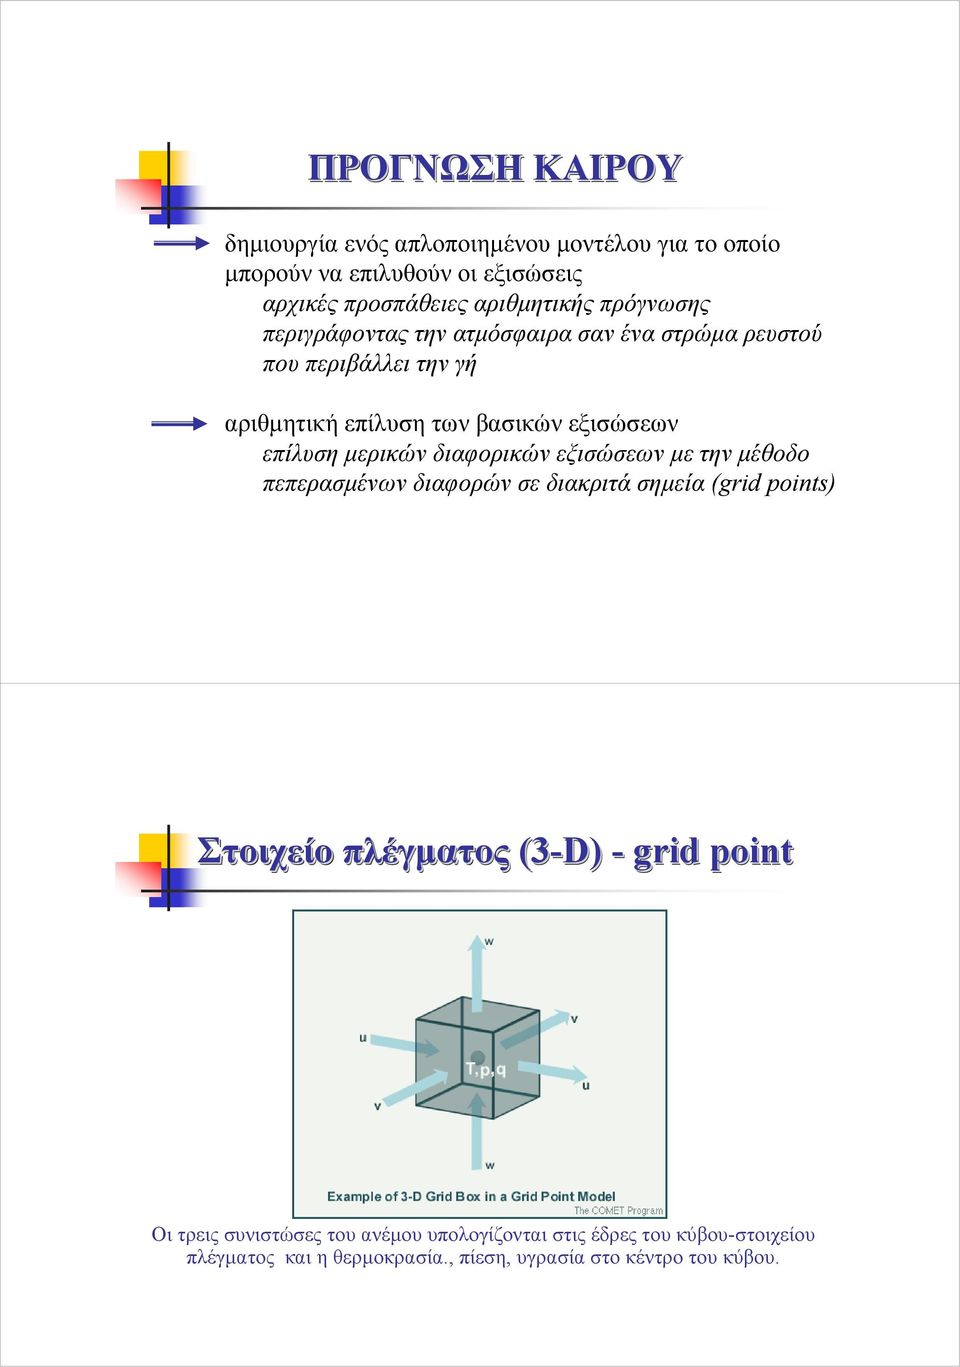 µερικών διαφορικών εξισώσεων µετηνµέθοδο πεπερασµένων διαφορών σε διακριτά σηµεία (grid points) Στοιχείο πλέγµατος (3-D) - grid point